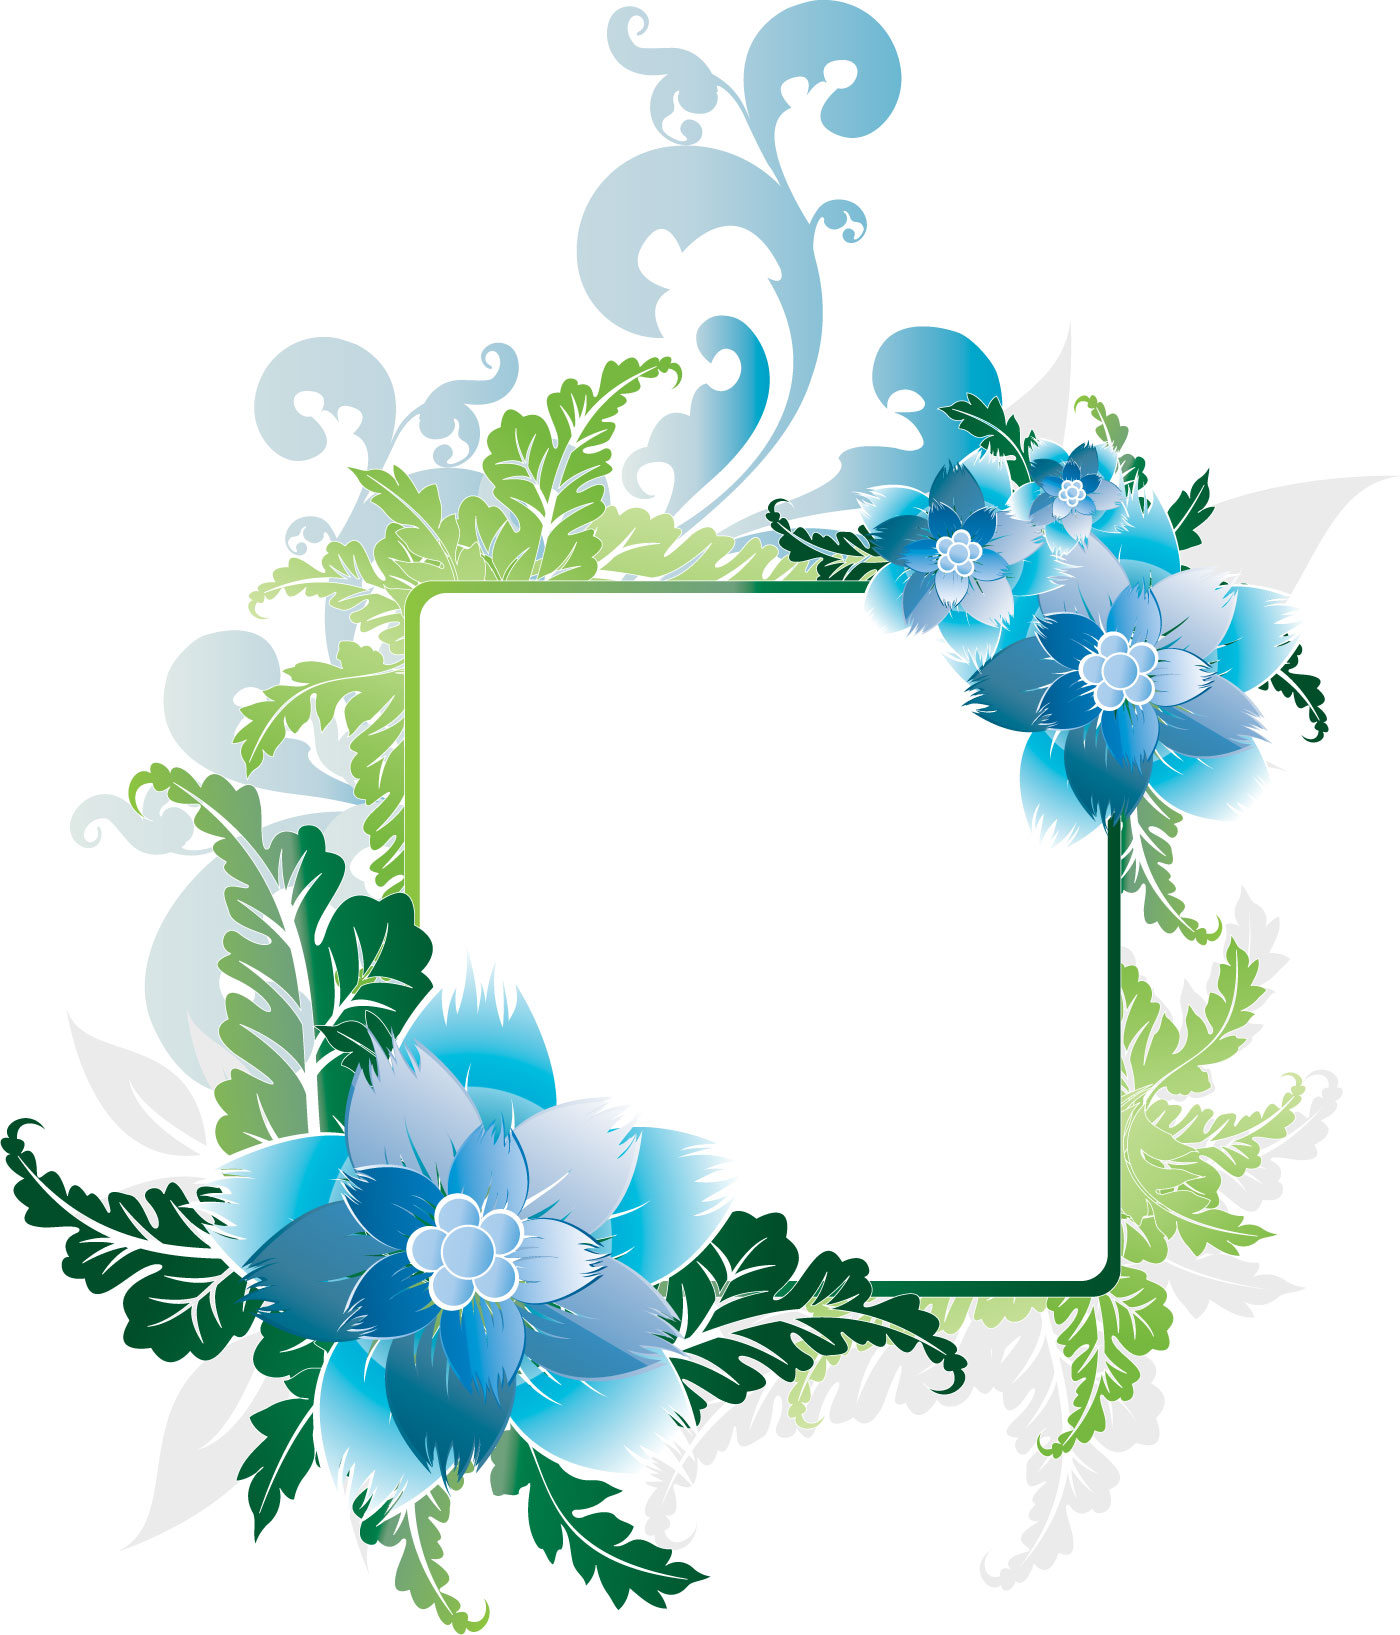 花のイラスト フリー素材 フレーム枠no 523 青 水色 葉